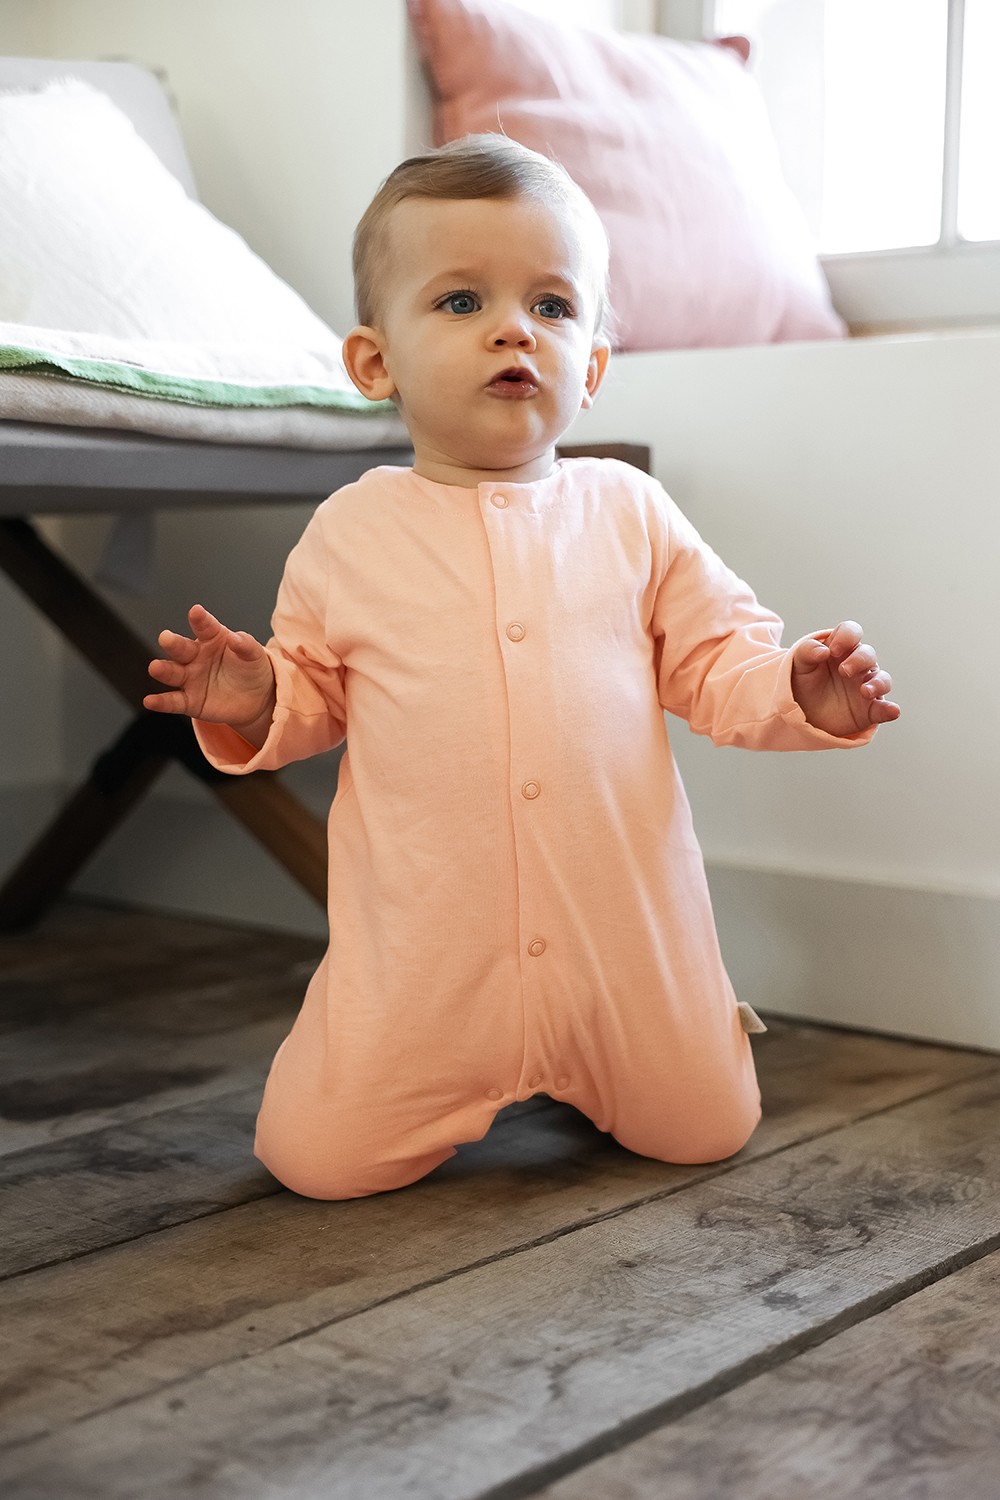 Mahé le pyjama de bébé